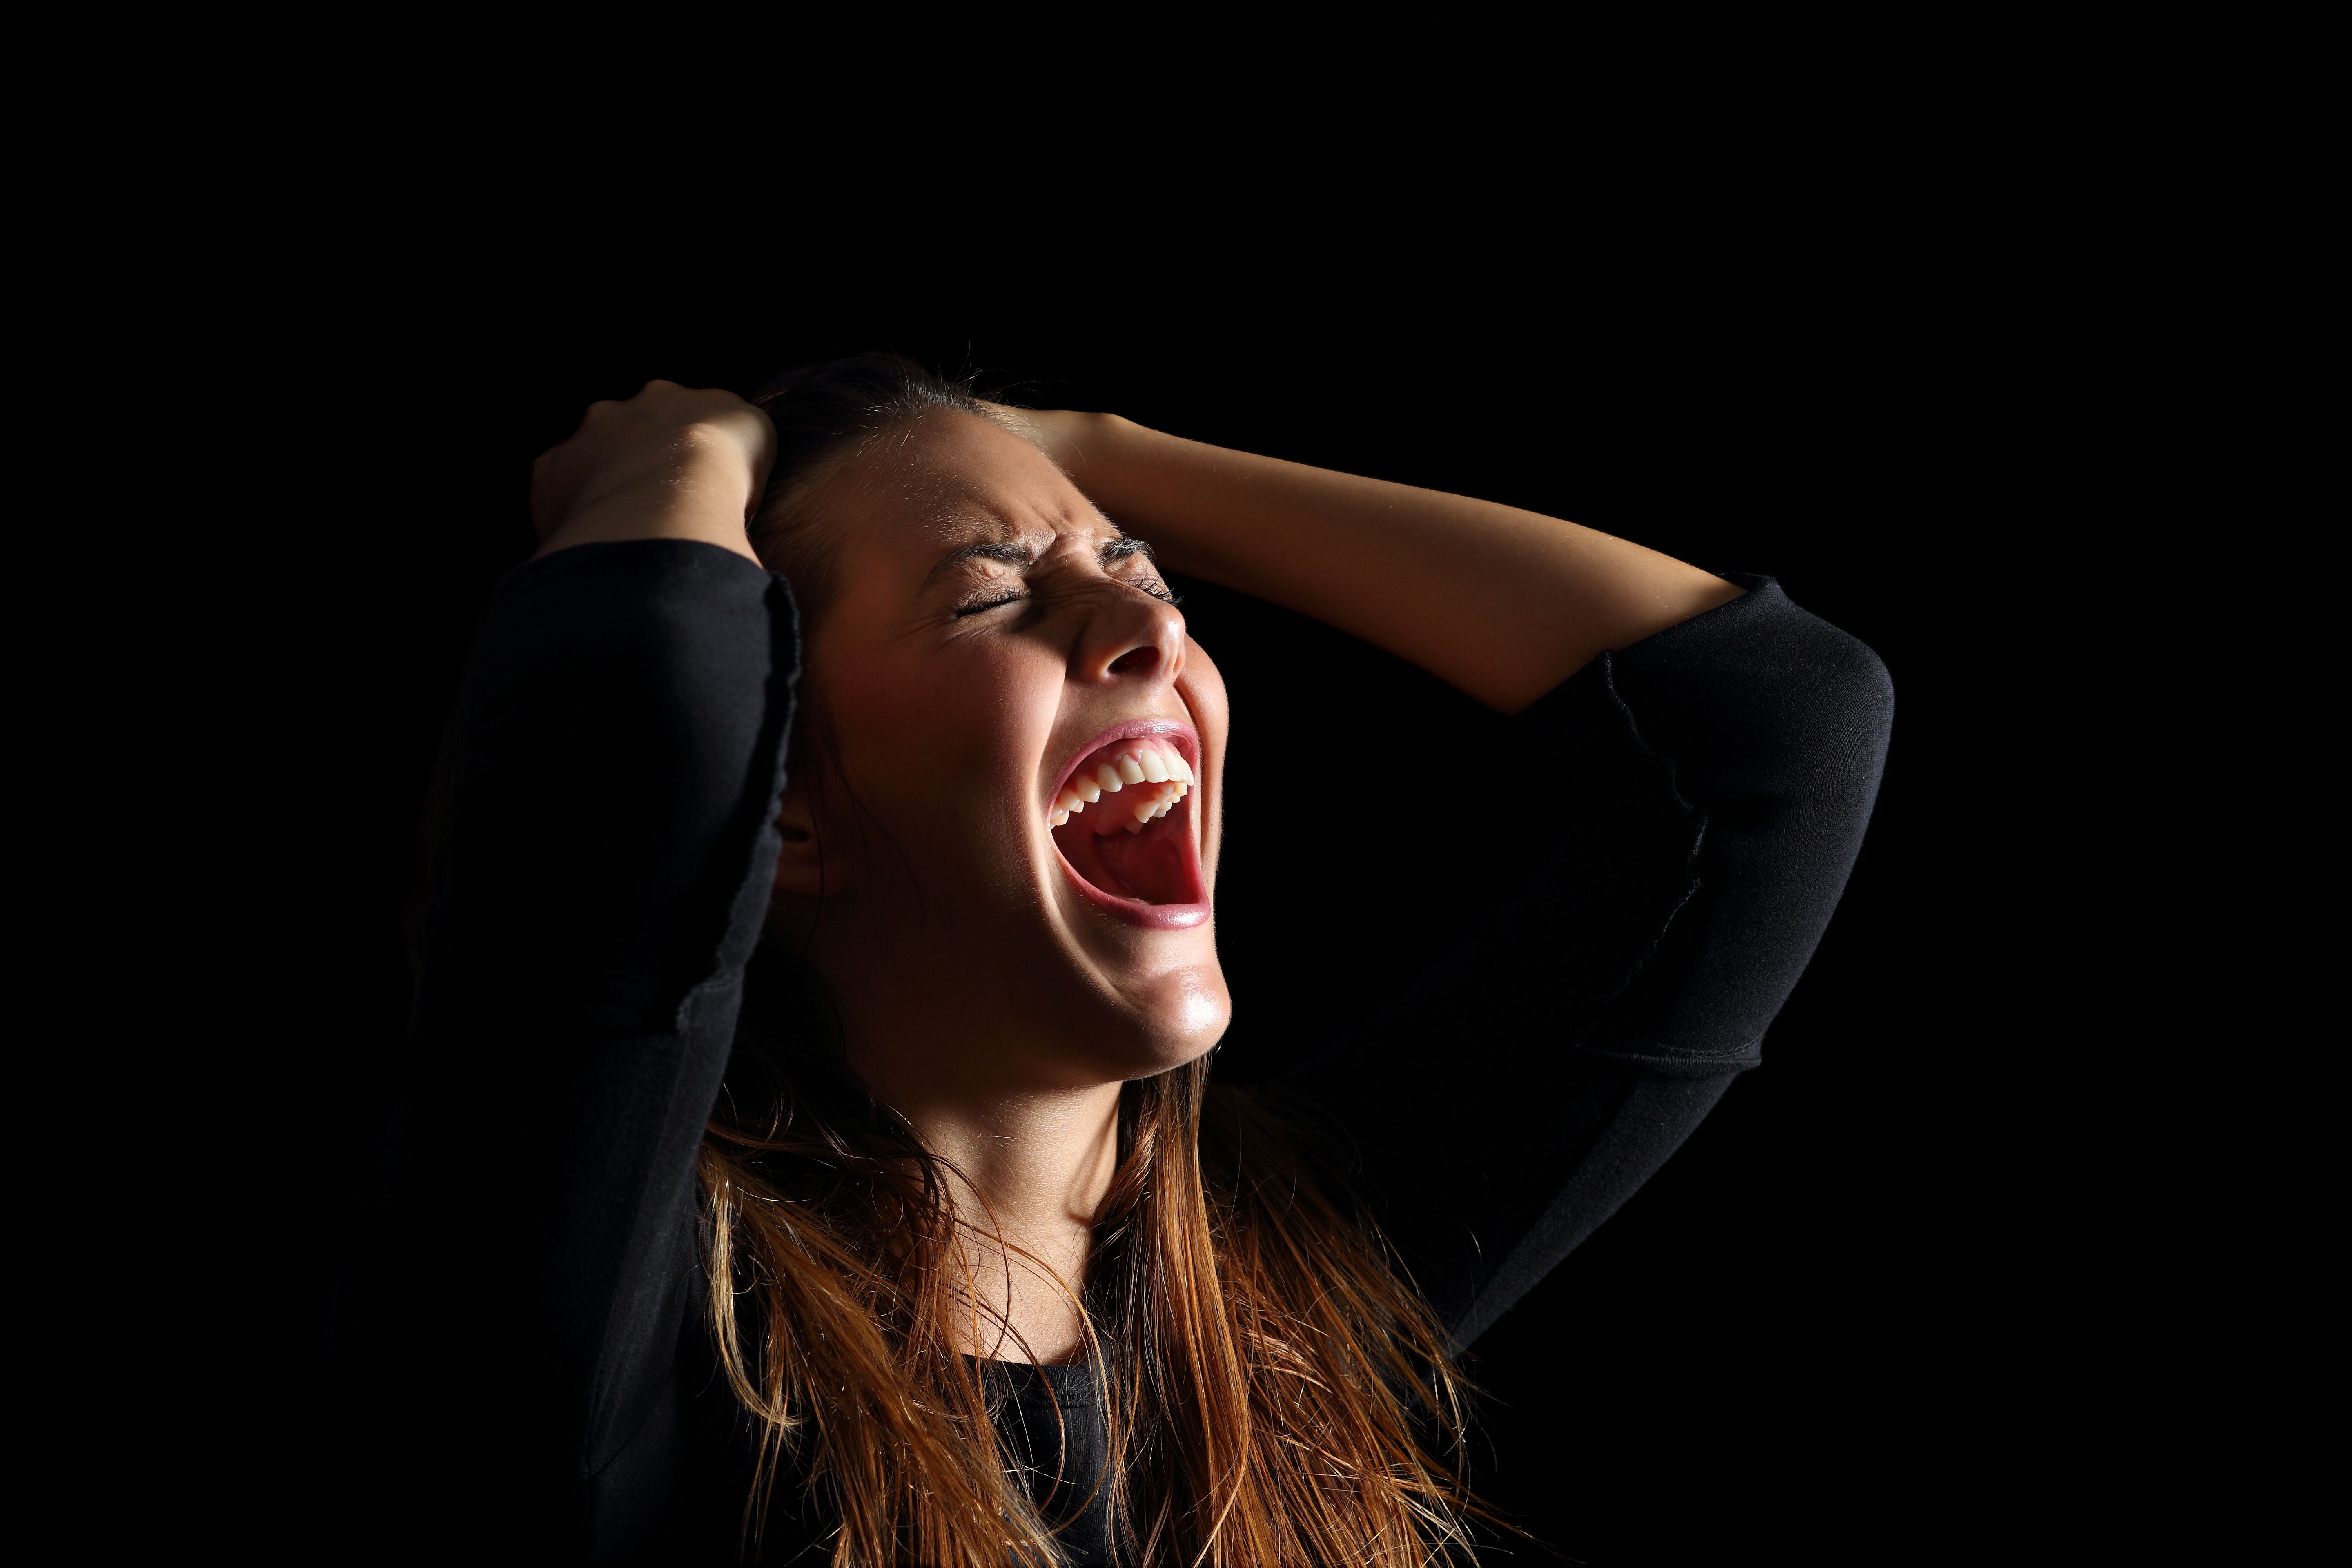 Eine Frau mit geschlossenen Augen und schreiend, während sie ihr Haar hält | Quelle: Getty Images